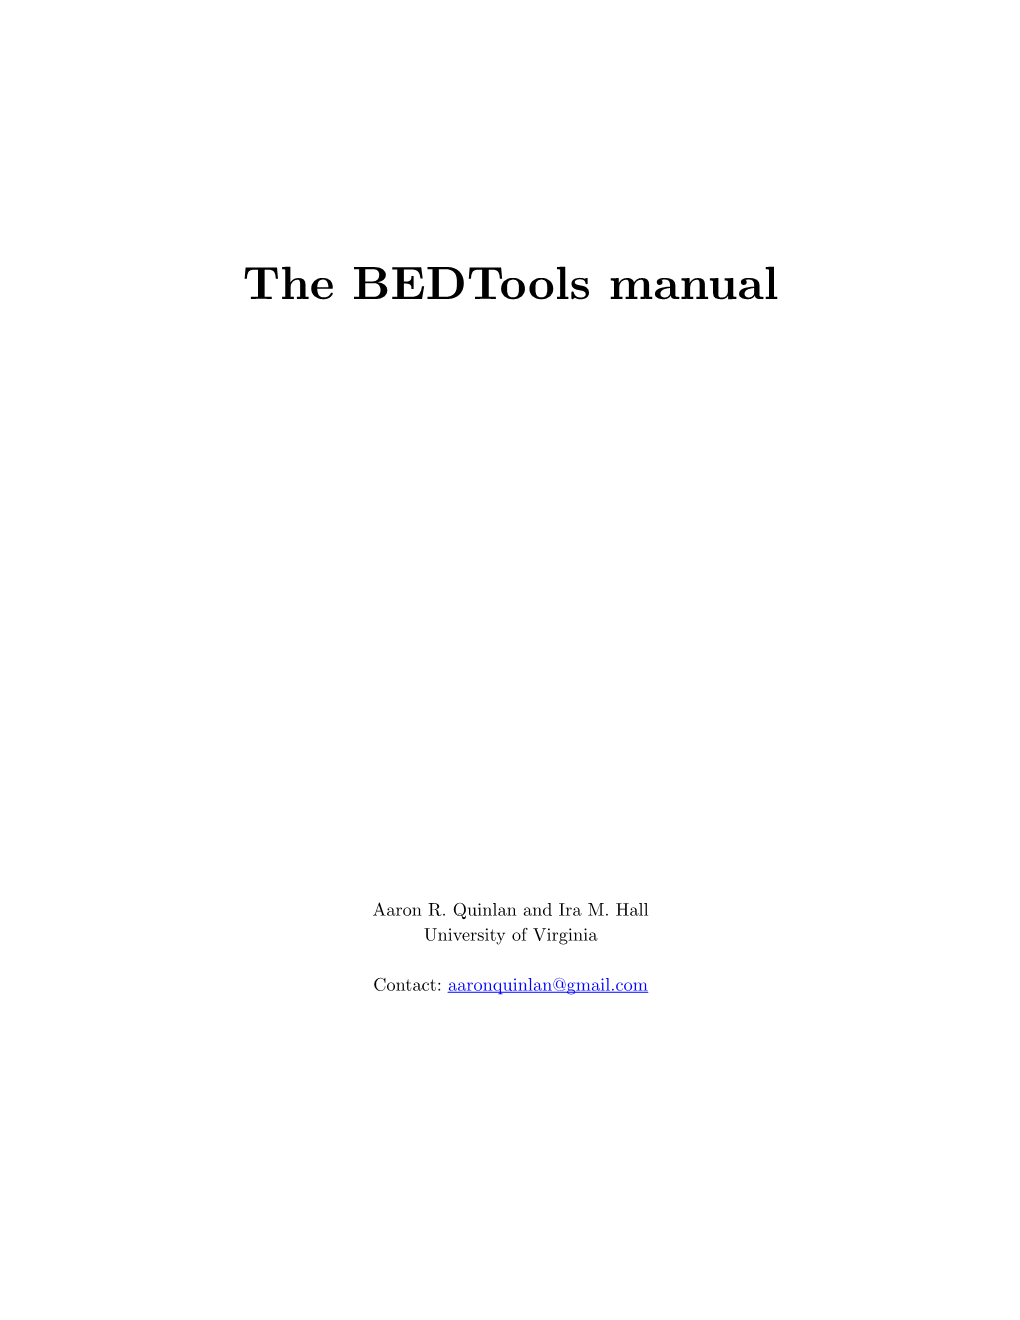 The Bedtools Manual